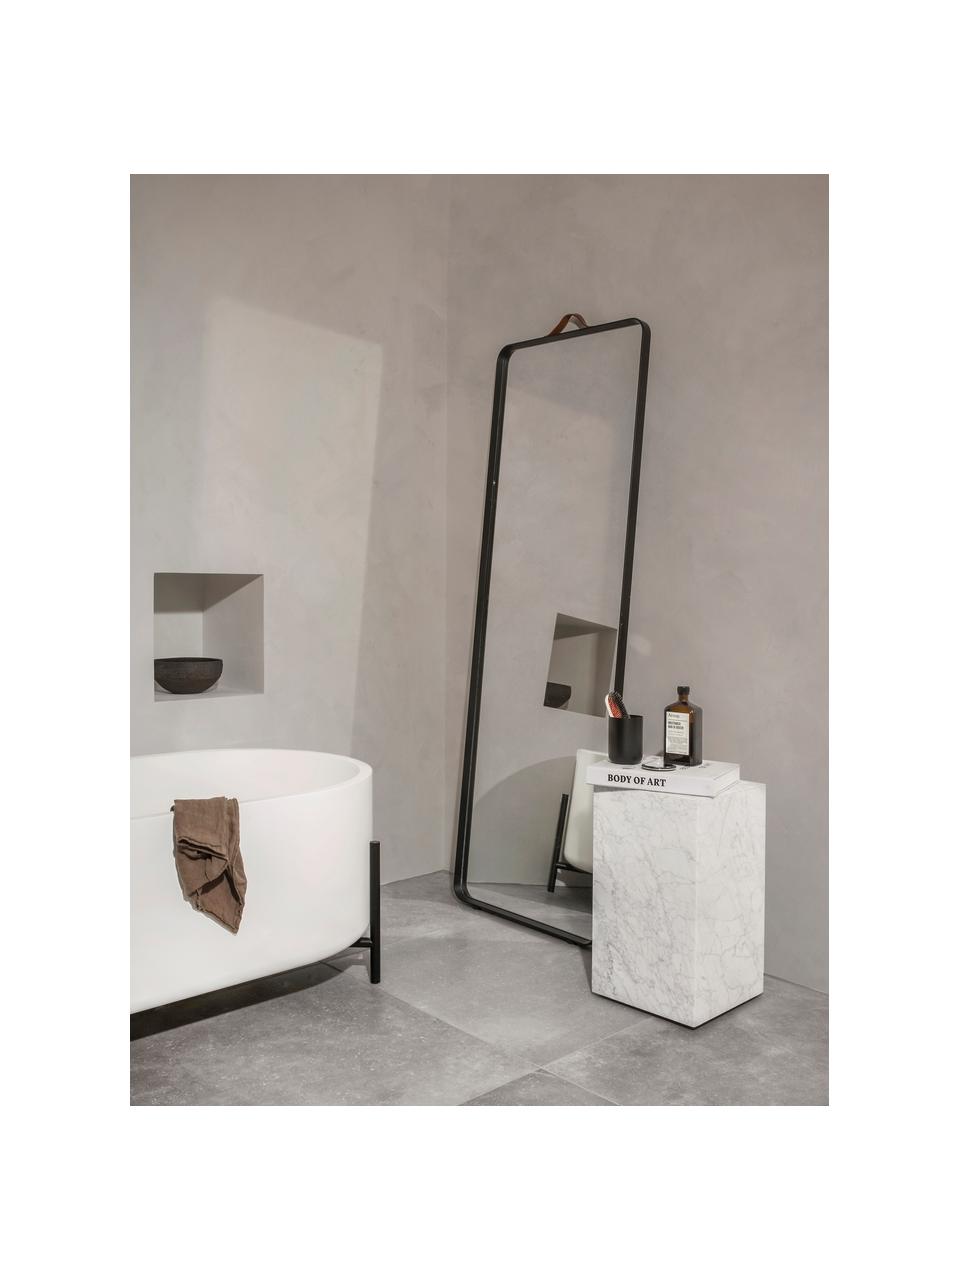 Espejo de pared de aluminio Norm, Asa: cuero, Espejo: cristal, Negro, An 60 x Al 170 cm